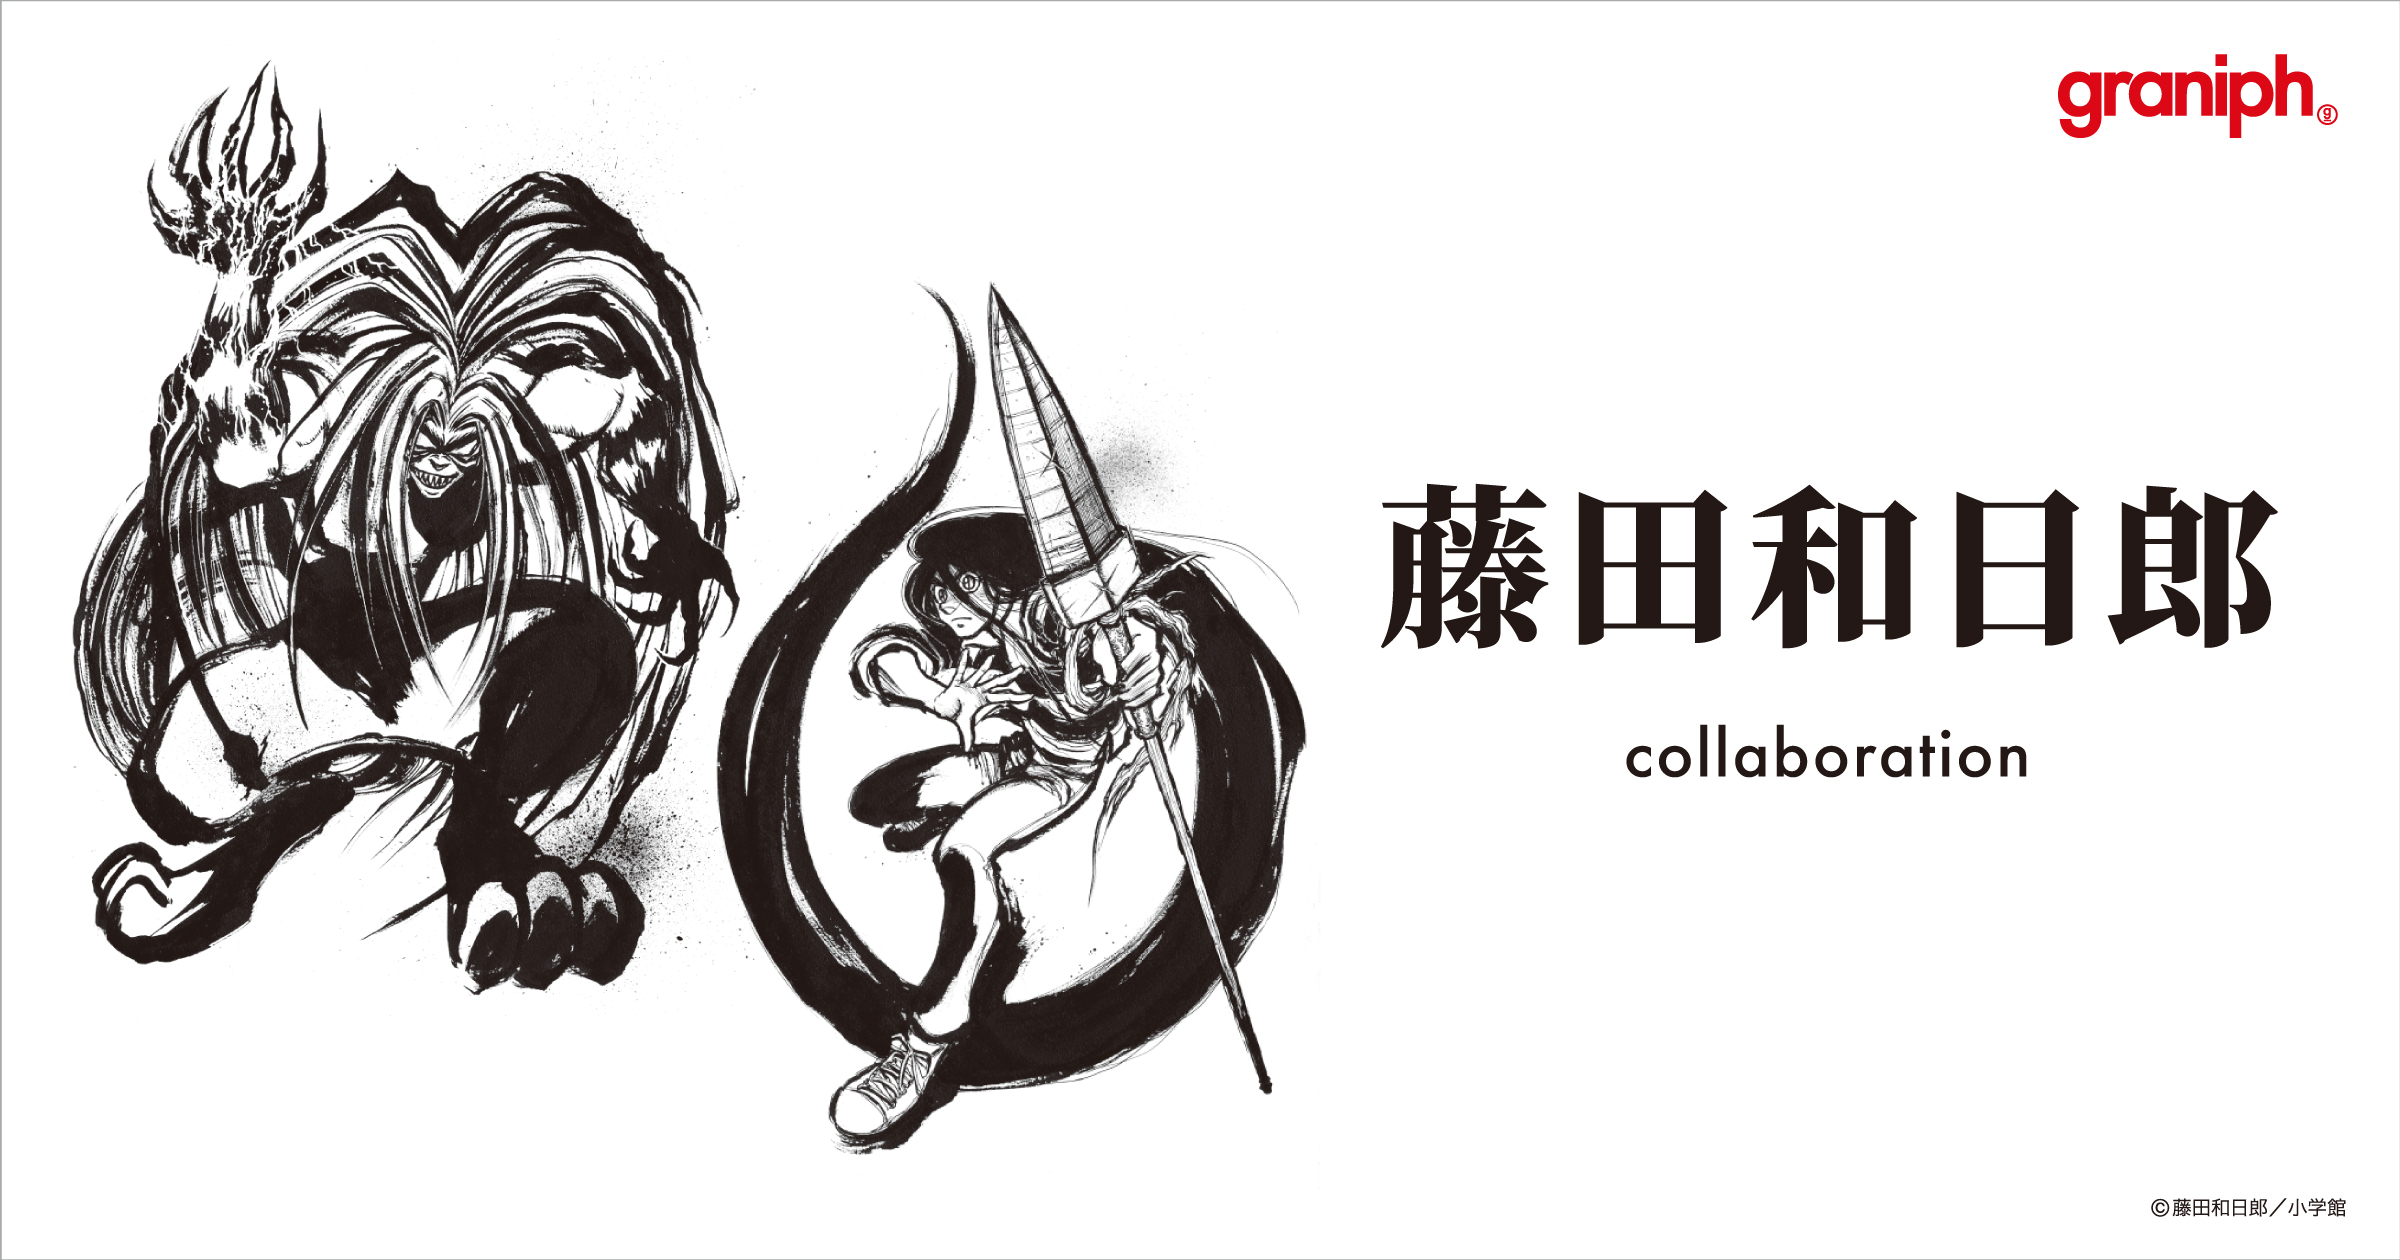 うしおととら や からくりサーカス など 数々の名作を生み続ける漫画家 藤田和日郎 との初のコラボレーション 株式会社グラニフのプレスリリース